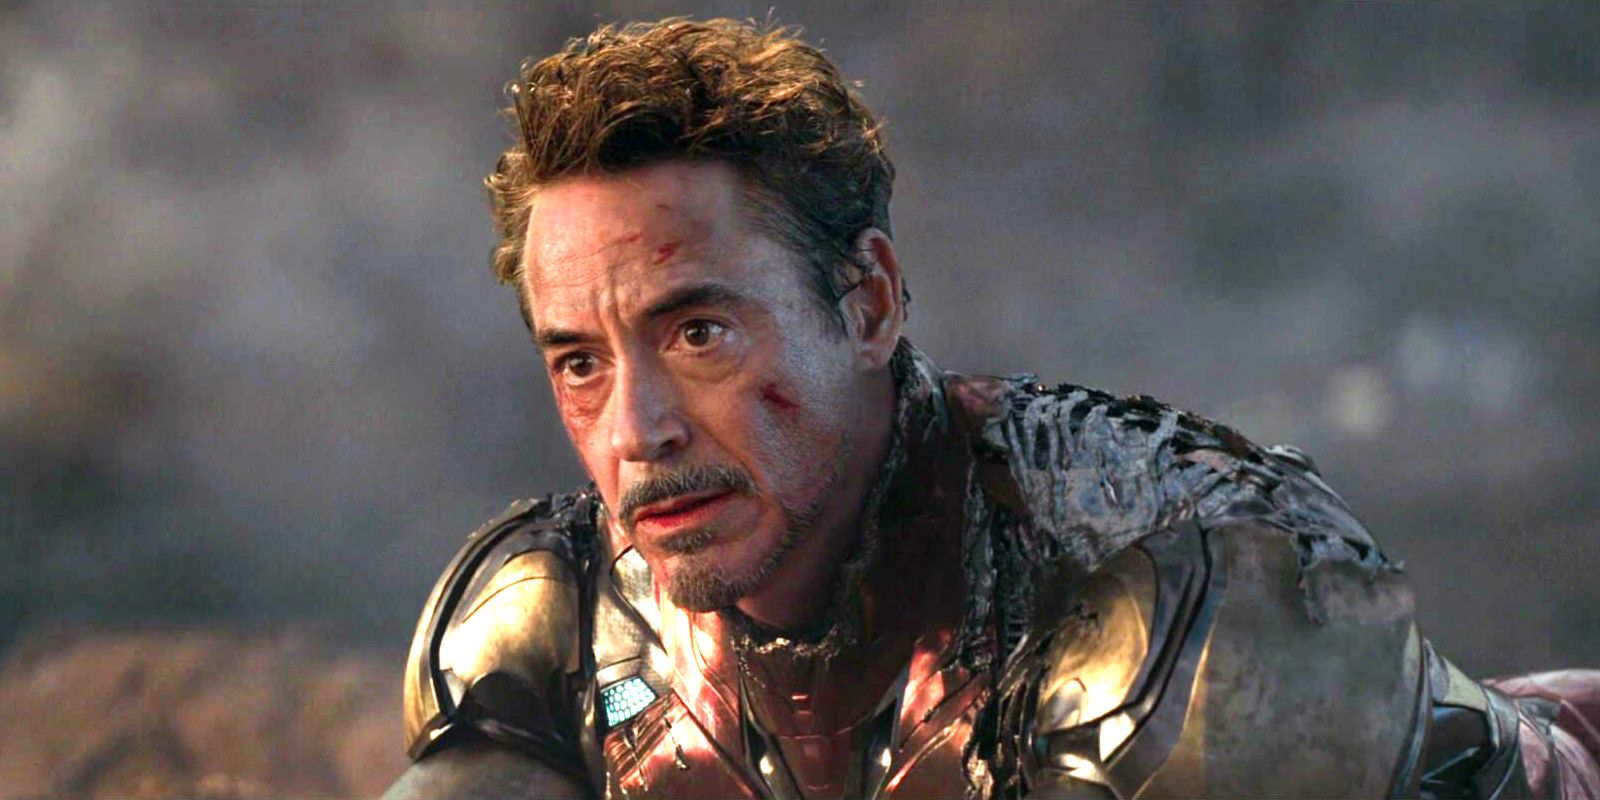 Robert Downey Jr as Tony Stark AKA Iron Man in Avengers Endgame